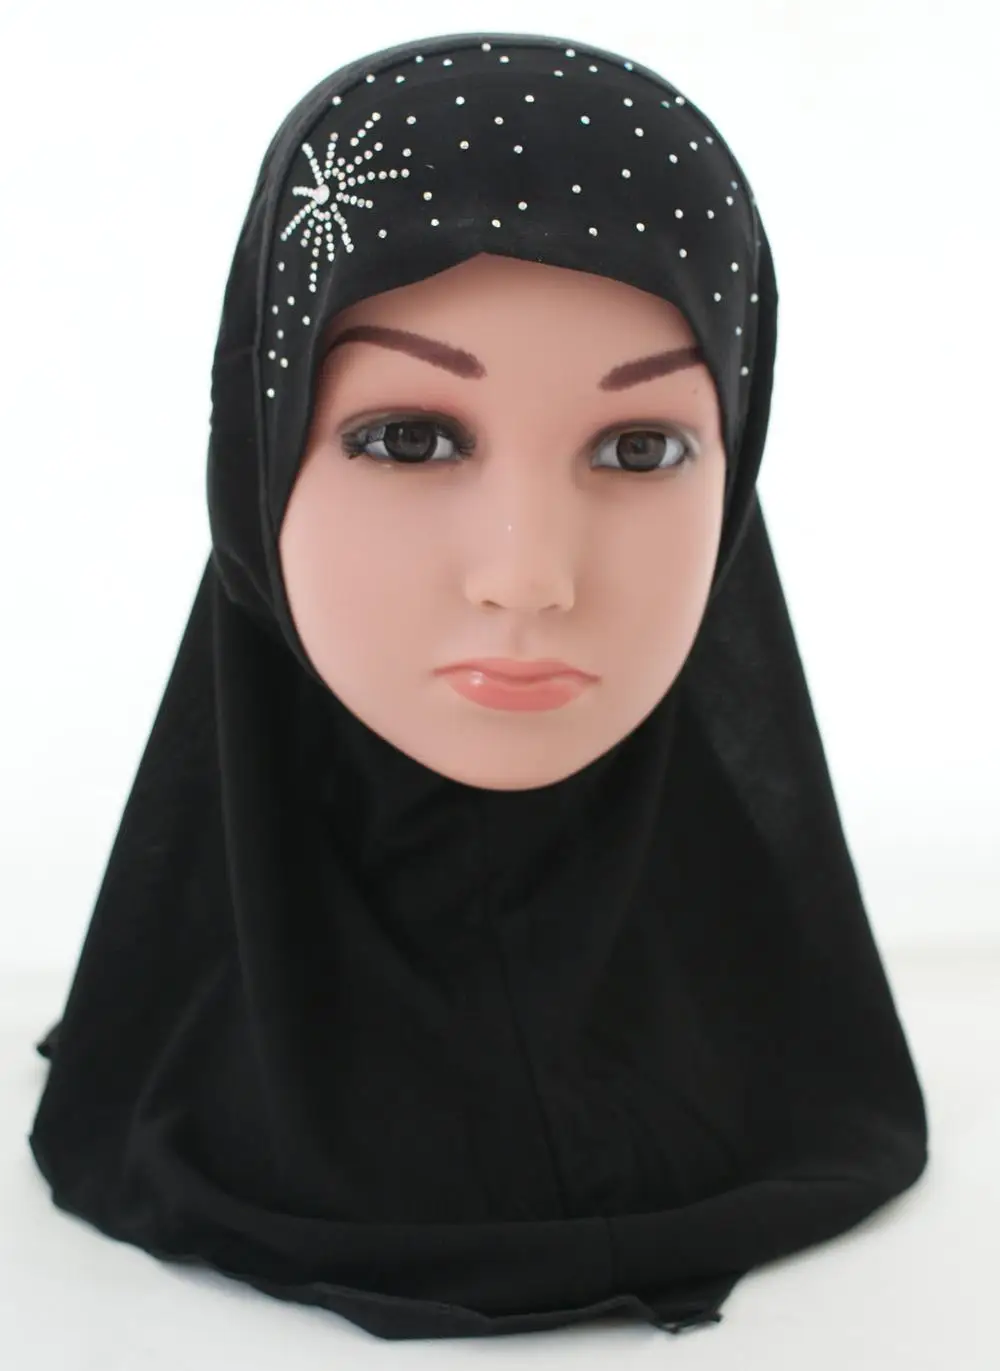 Дети девочки исламский мусульманский шарф в арабском стиле школы Стразы головные уборы для детей Ближний Восток тюрбан Рамадан шапочки капот выпадение волос Мода